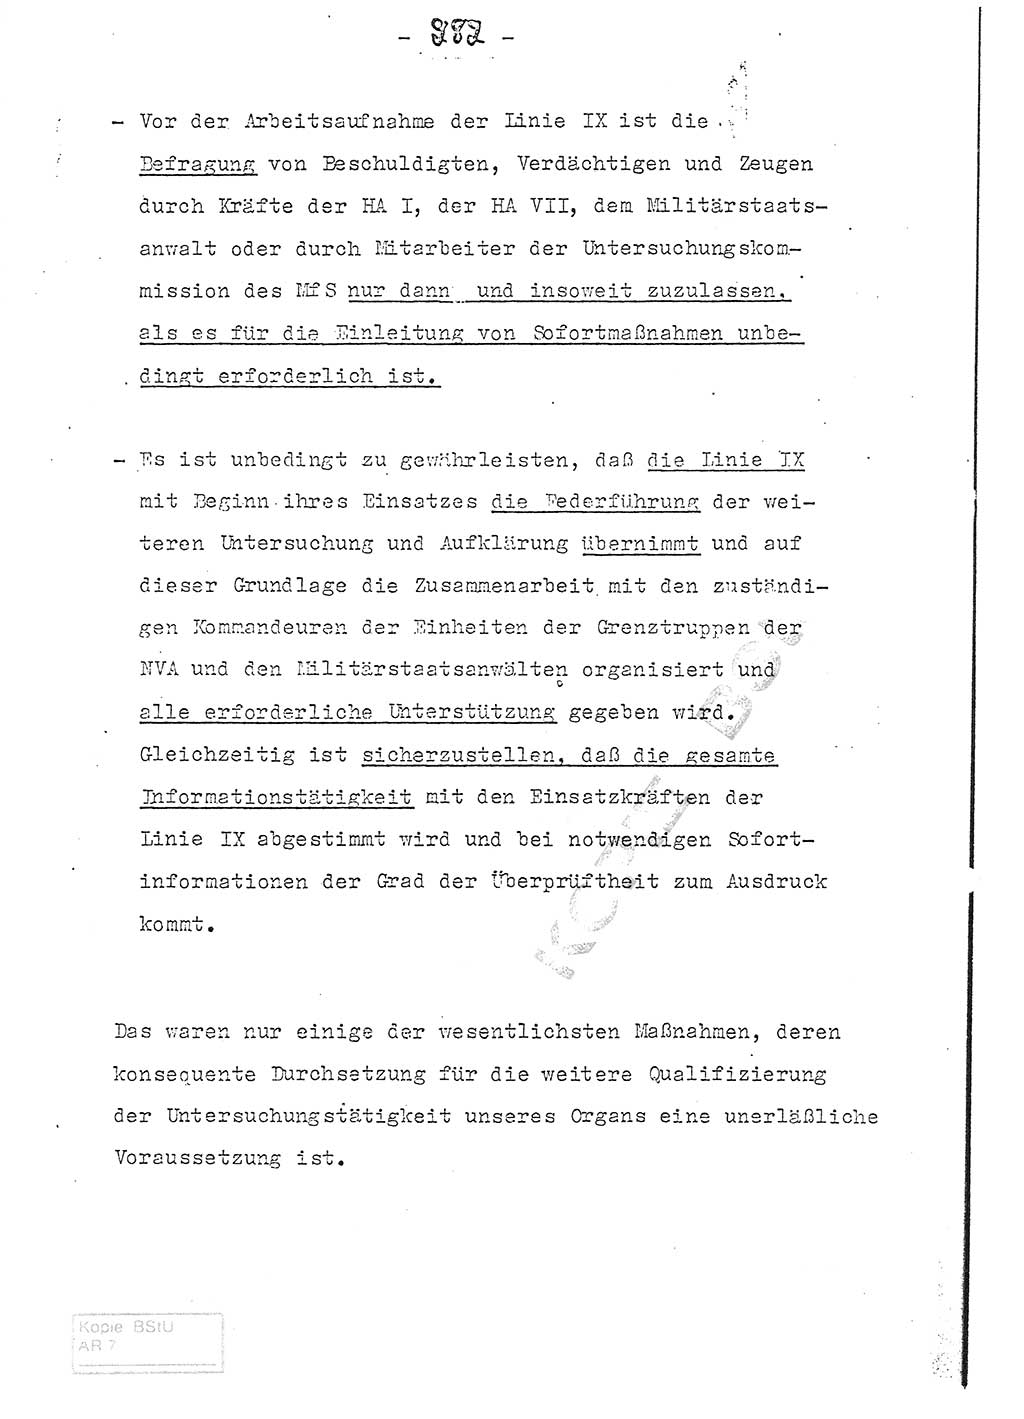 Referat (Entwurf) des Genossen Minister (Generaloberst Erich Mielke) auf der Dienstkonferenz 1972, Ministerium für Staatssicherheit (MfS) [Deutsche Demokratische Republik (DDR)], Der Minister, Geheime Verschlußsache (GVS) 008-150/72, Berlin 25.2.1972, Seite 282 (Ref. Entw. DK MfS DDR Min. GVS 008-150/72 1972, S. 282)